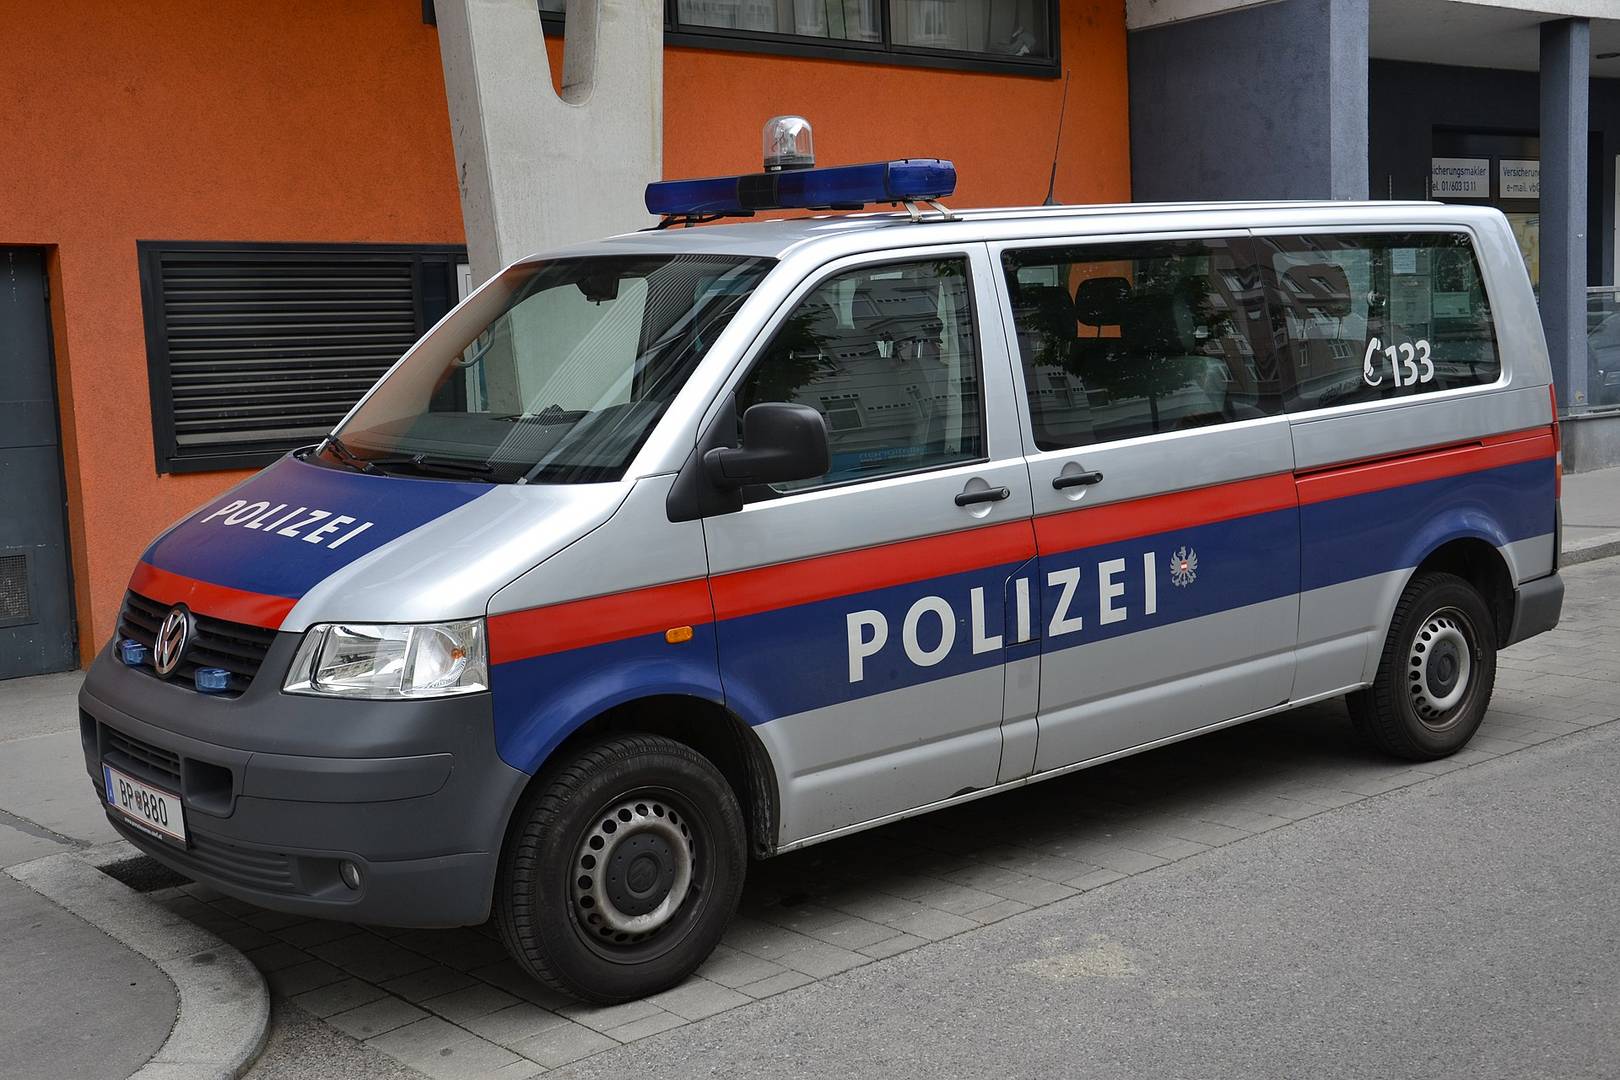 Австрийская полиция